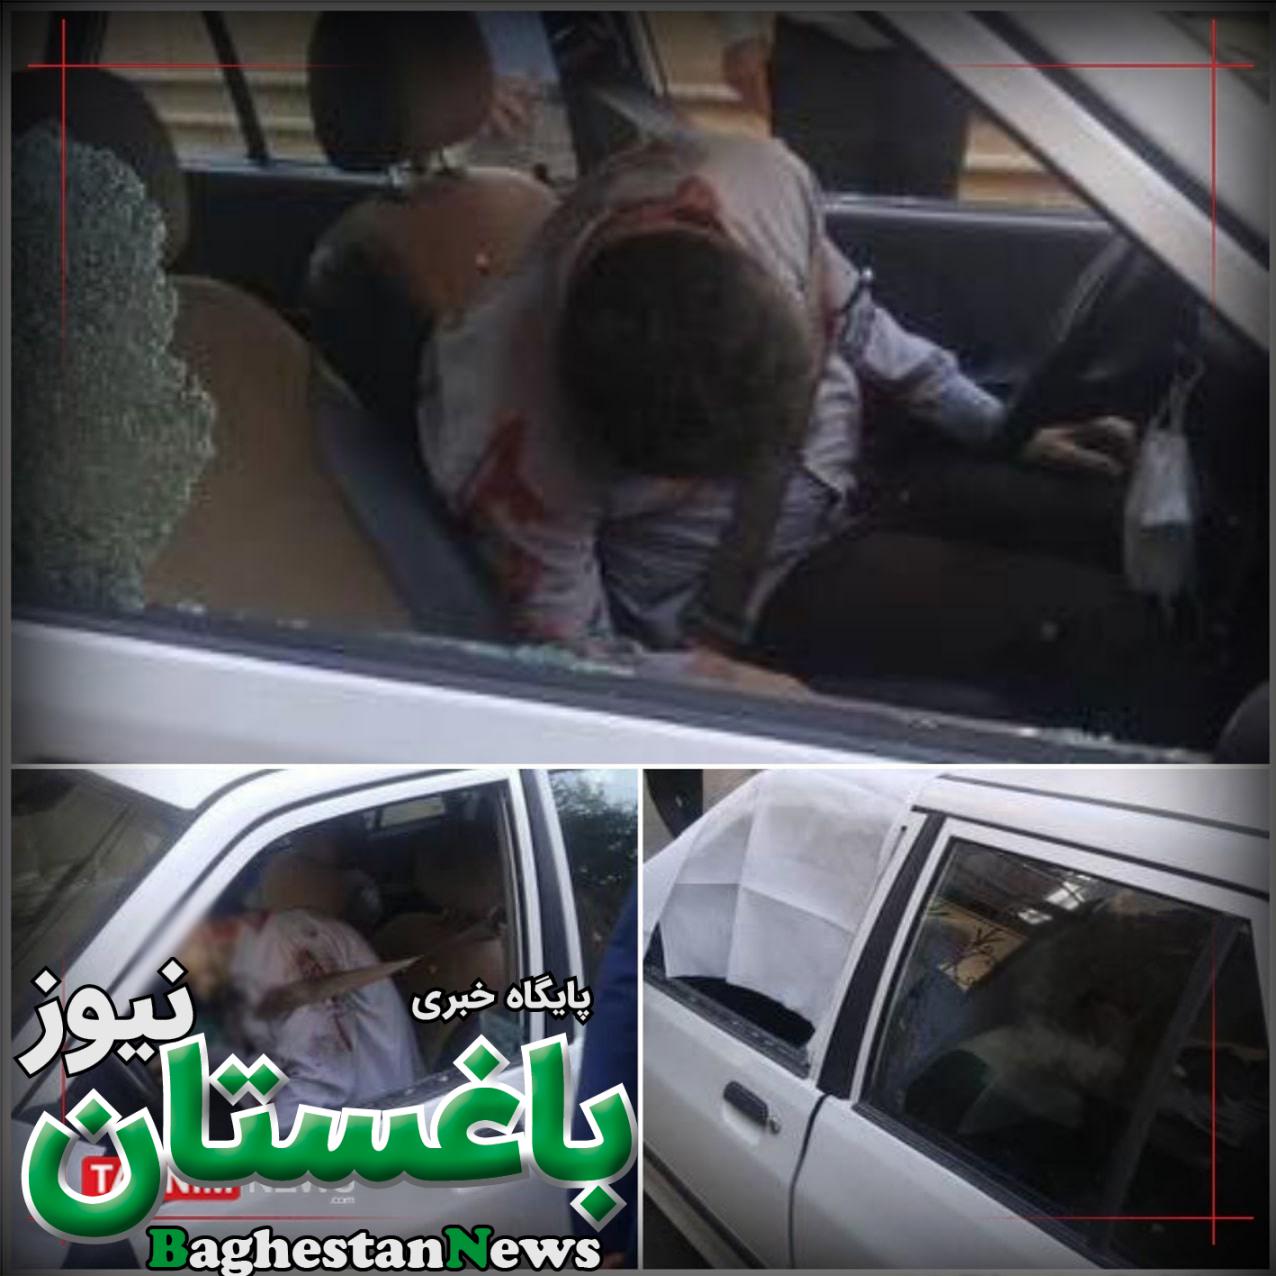  تصویری از شهید صیاد خدایی از مدافعان حرم که امروز توسط راکبین موتور سیکلت به شهادت رسید 